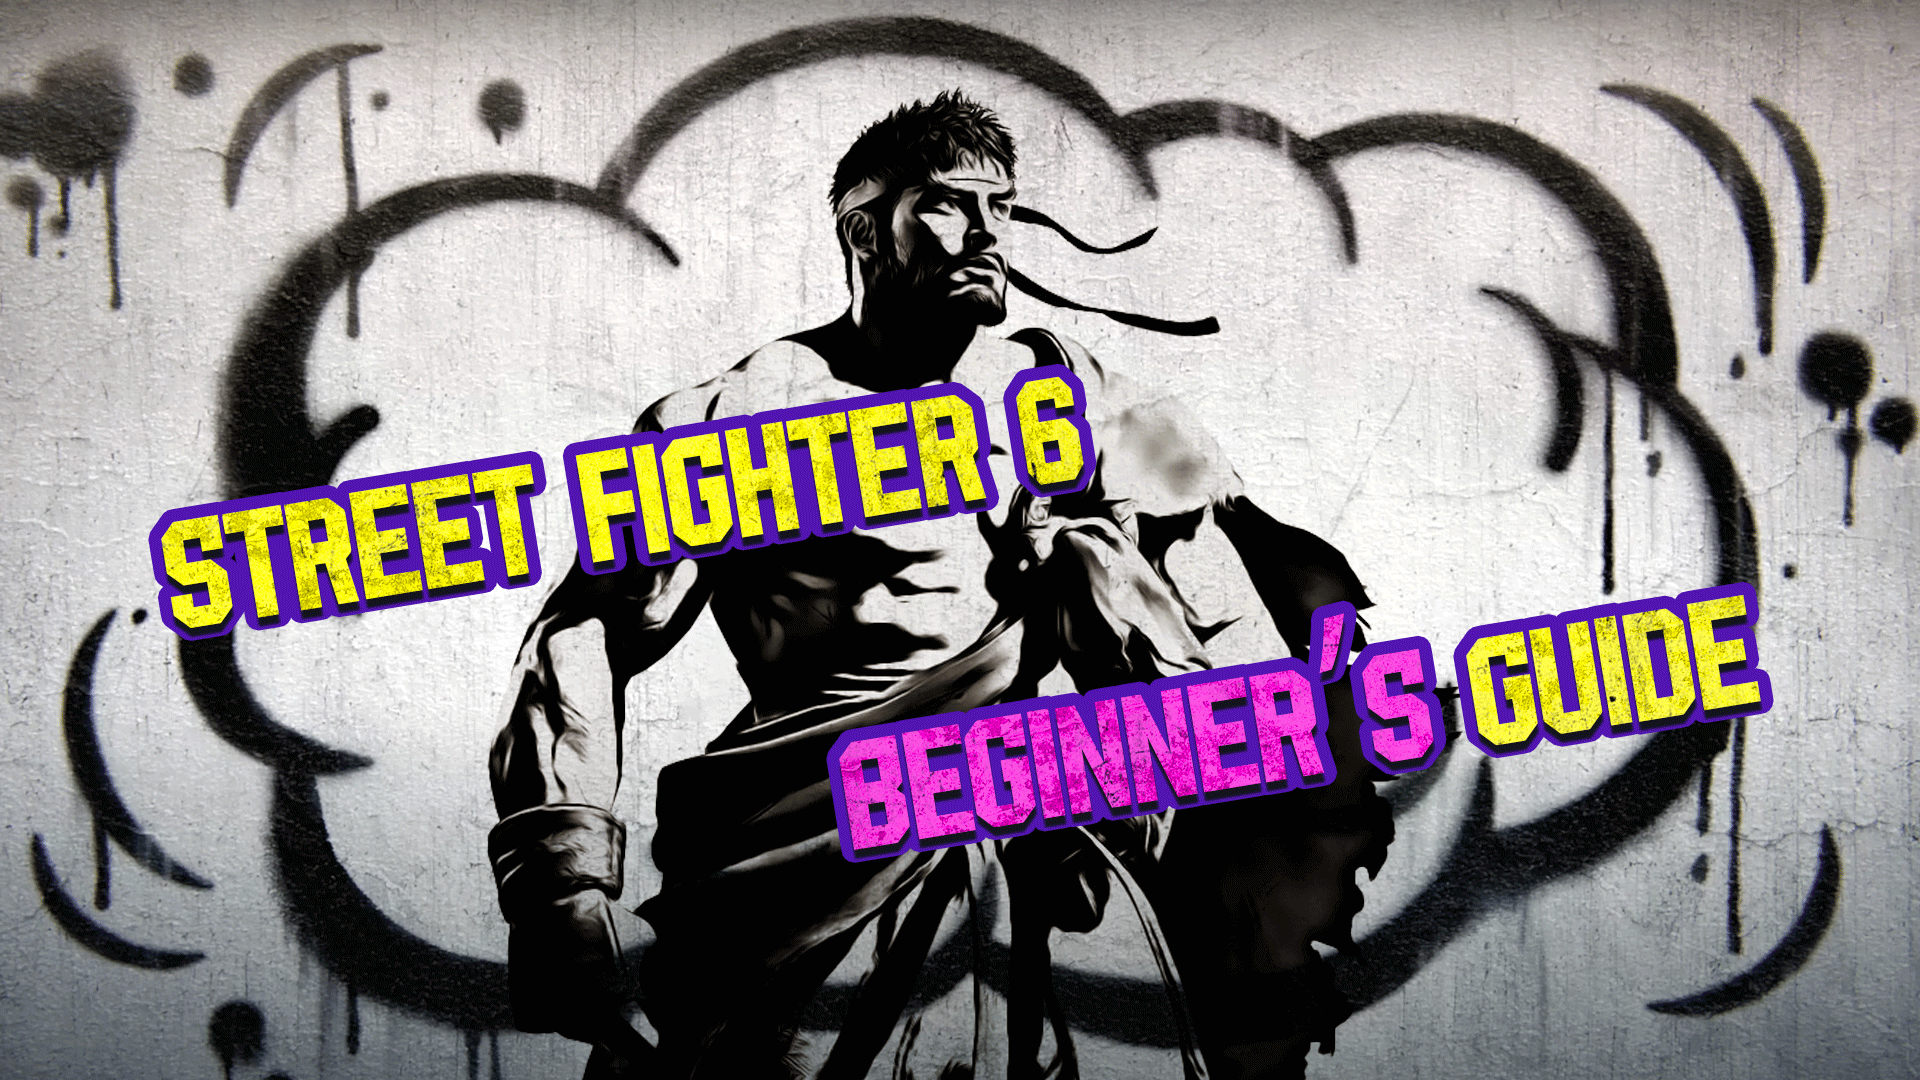 Street Fighter 6 beginner's guide